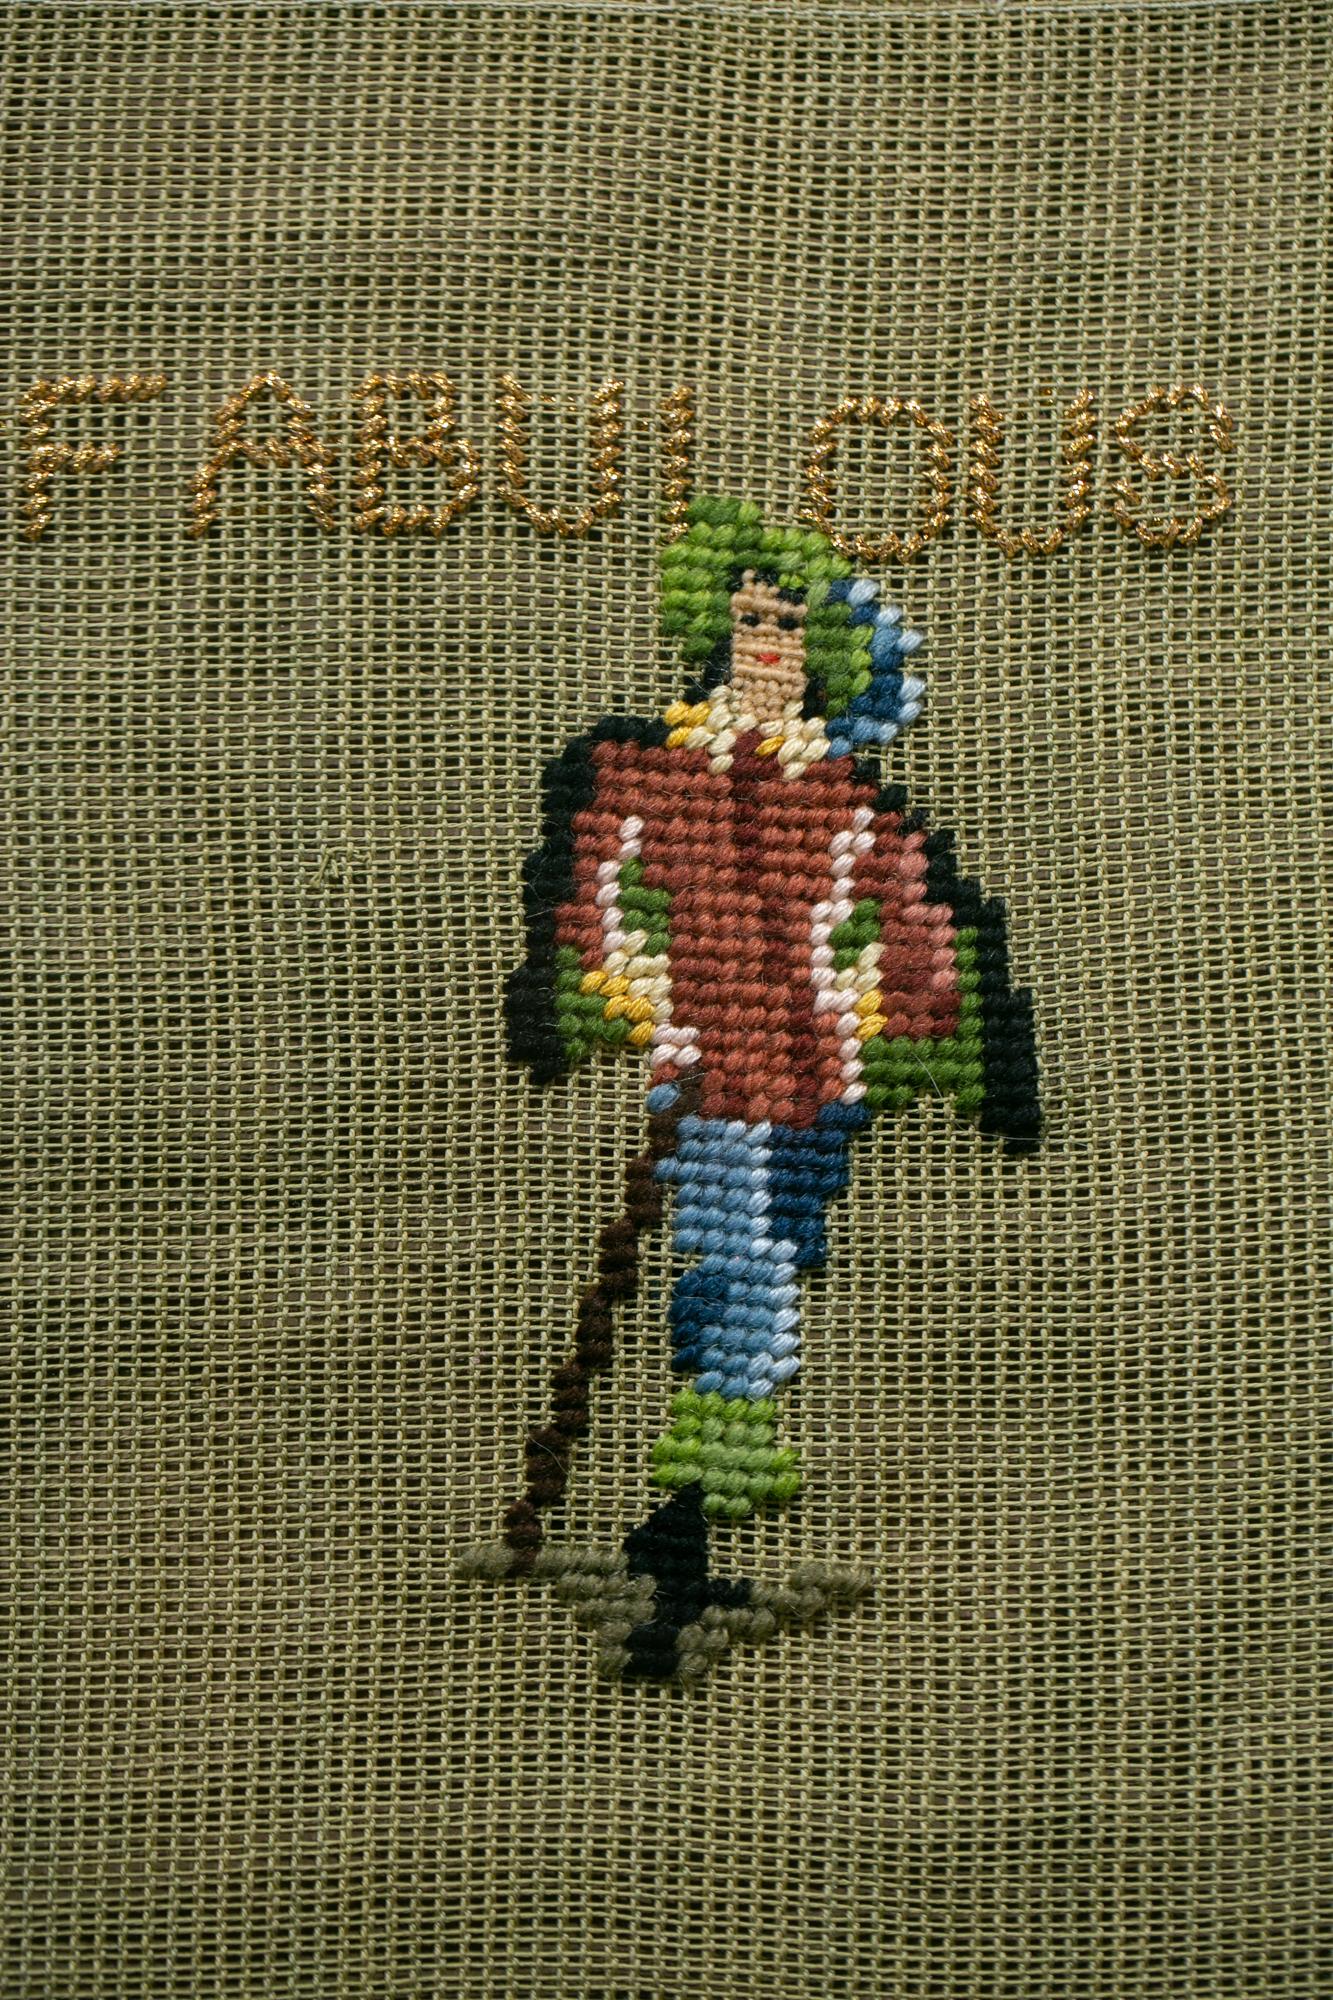 fabulous textile